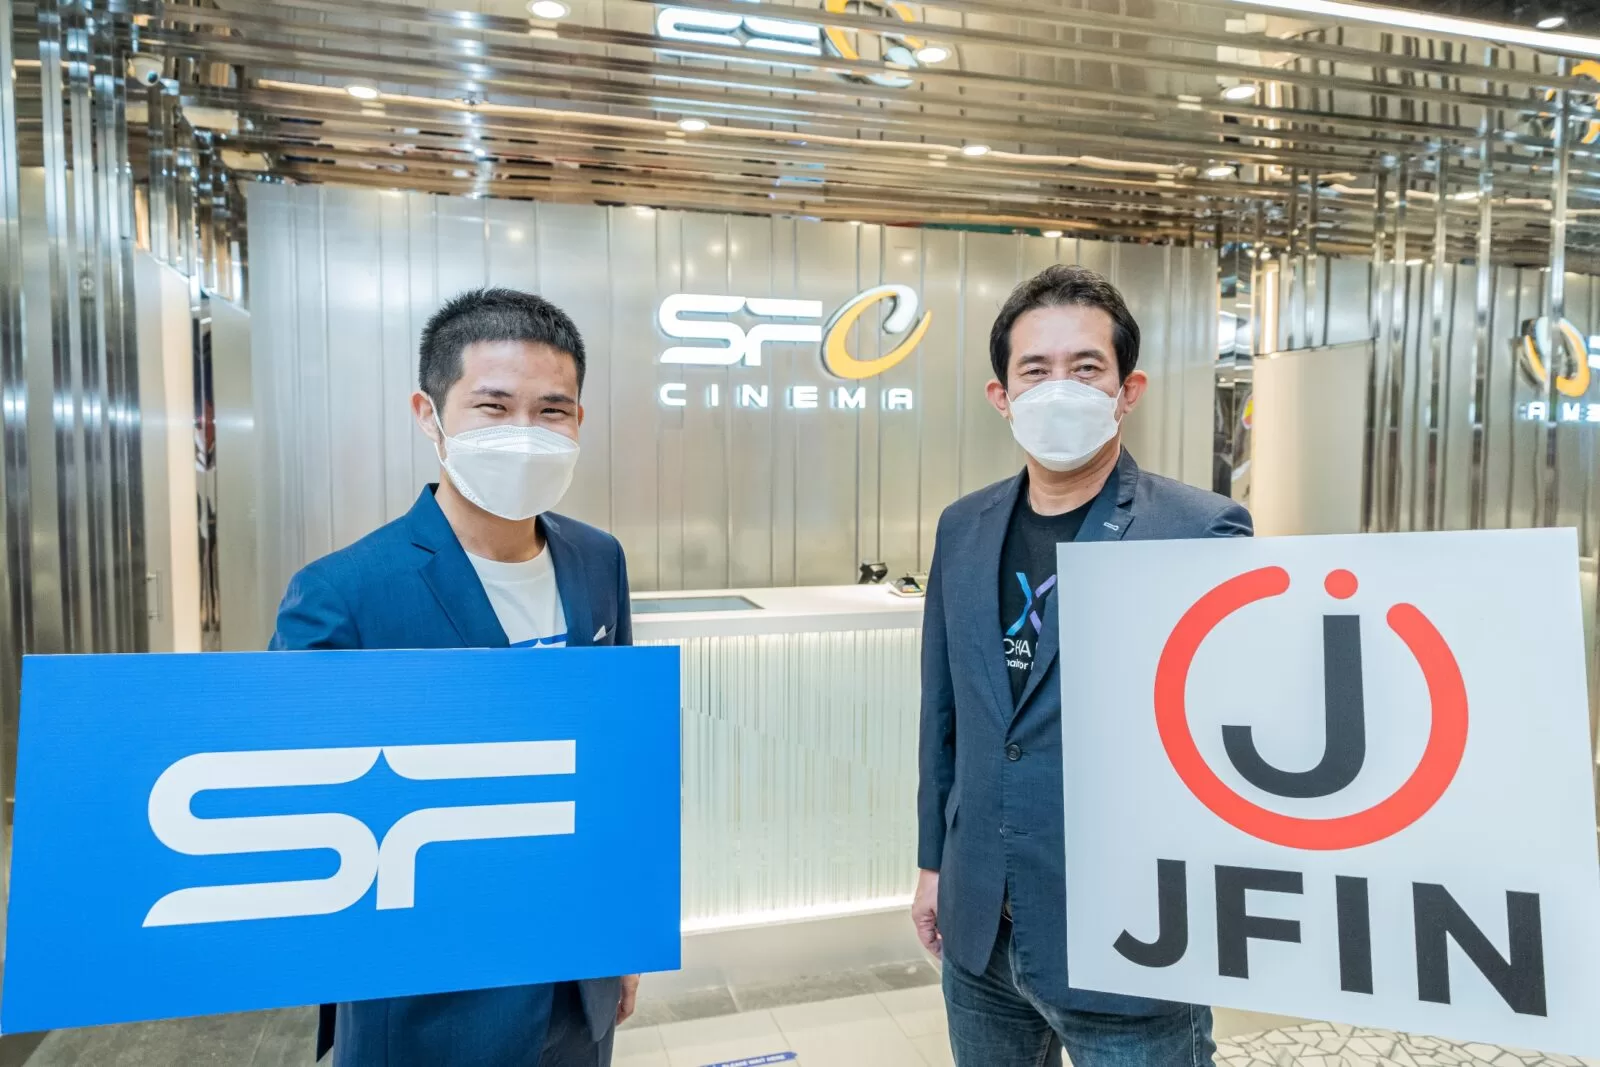 SFxJFIN 02 | JFIN Coin | แลกบัตรชมภาพยนตร์ด้วย JFIN Coin บน SF Cinema แอปฯ รายแรกของไทย